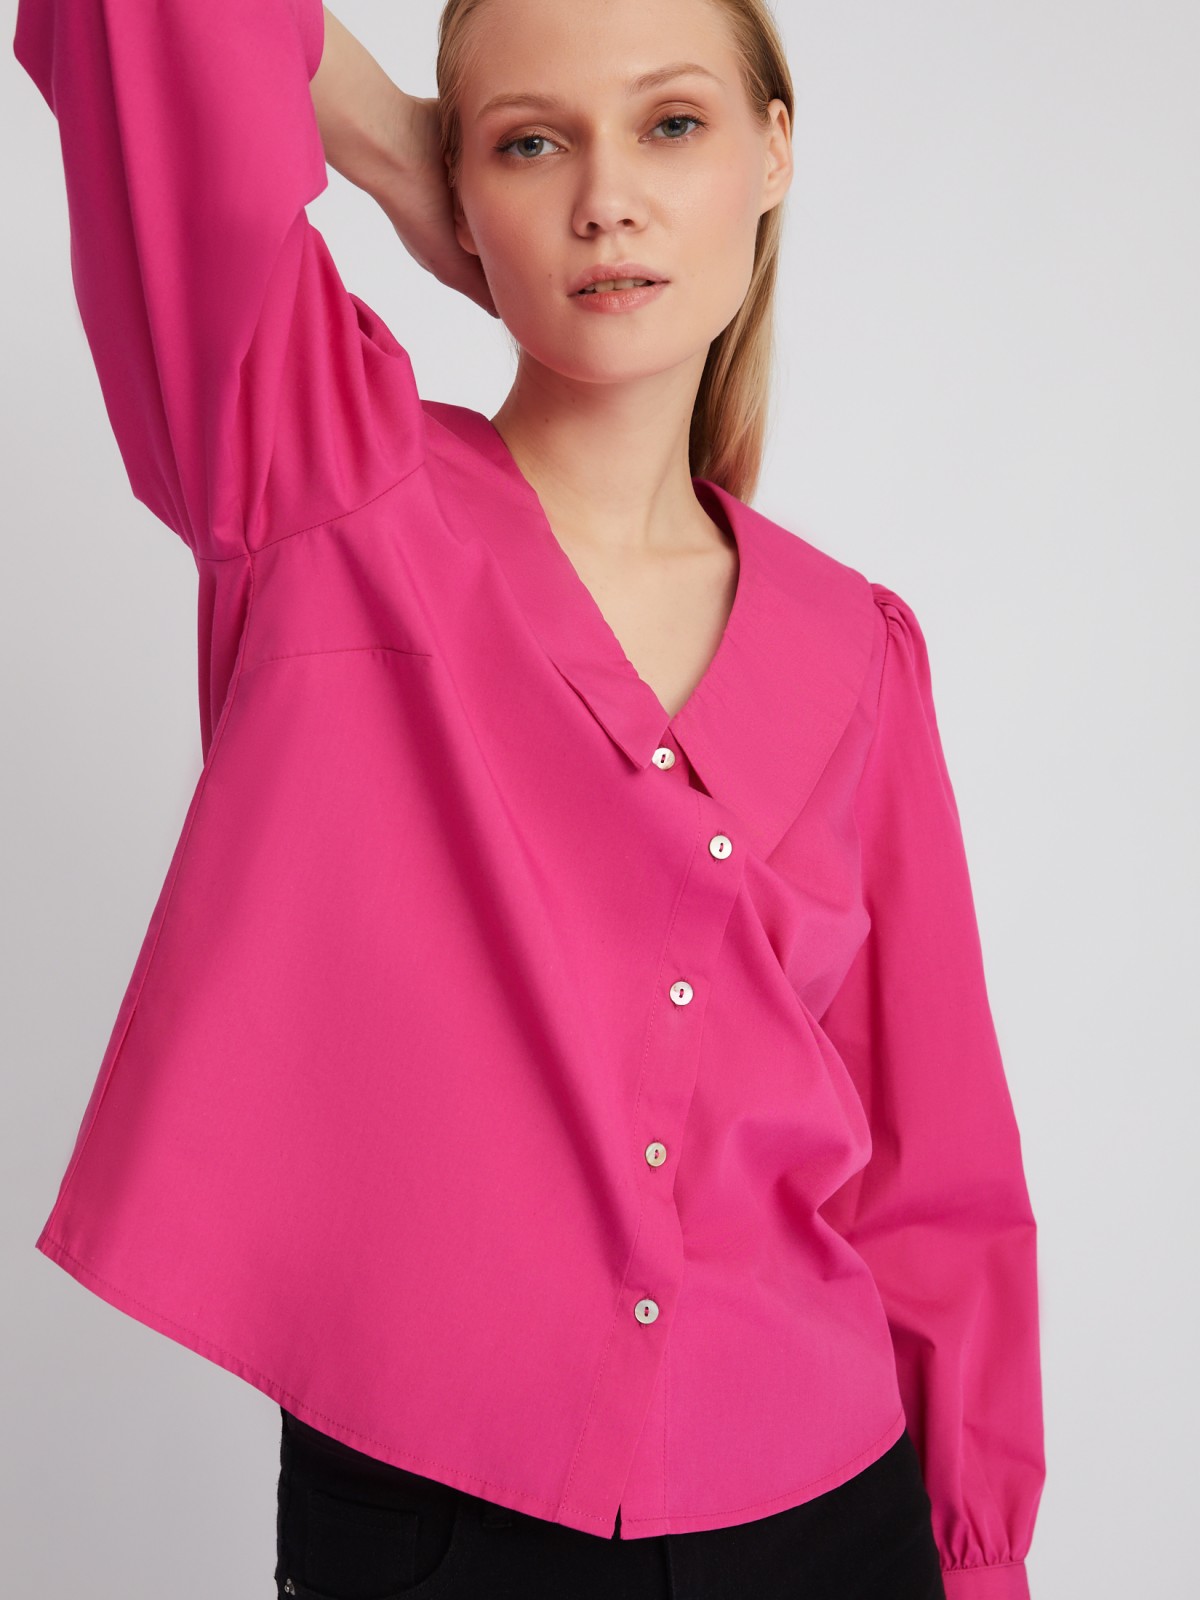 Блузка-рубашка с акцентным воротником и объёмными рукавами zolla 02411117Y593, цвет фуксия, размер XS - фото 4